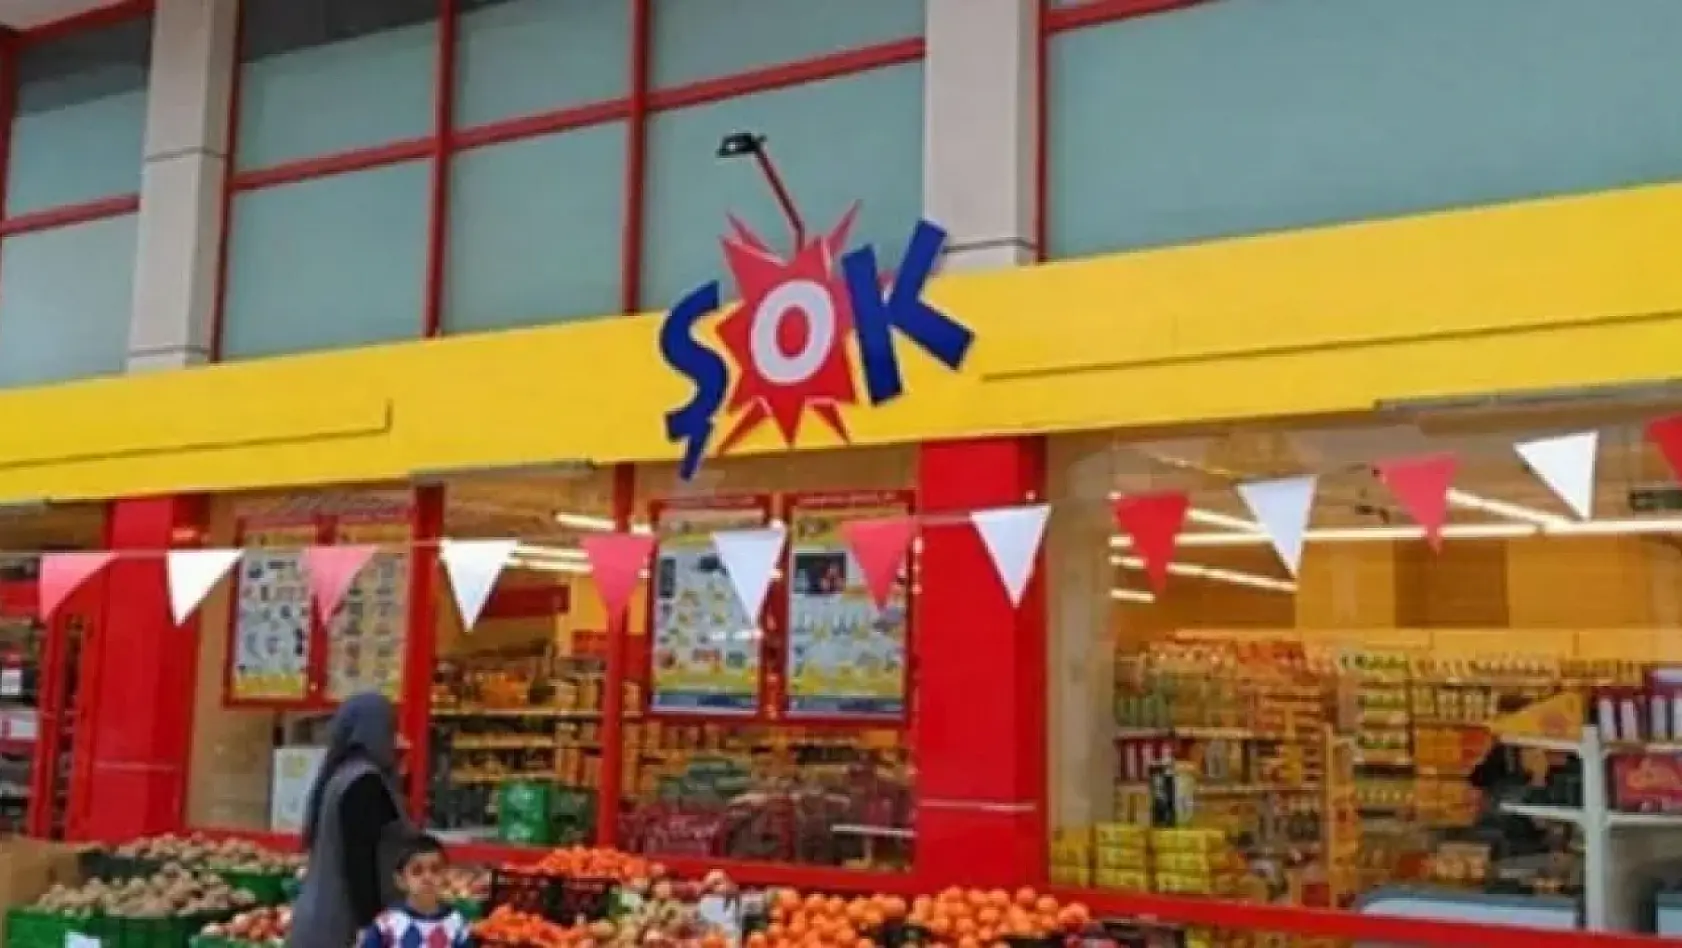 ŞOK marketleri Elazığ'da dev indirimlere gitti: Teknolojik ürünleri görenler resmen sıra oluşturacak